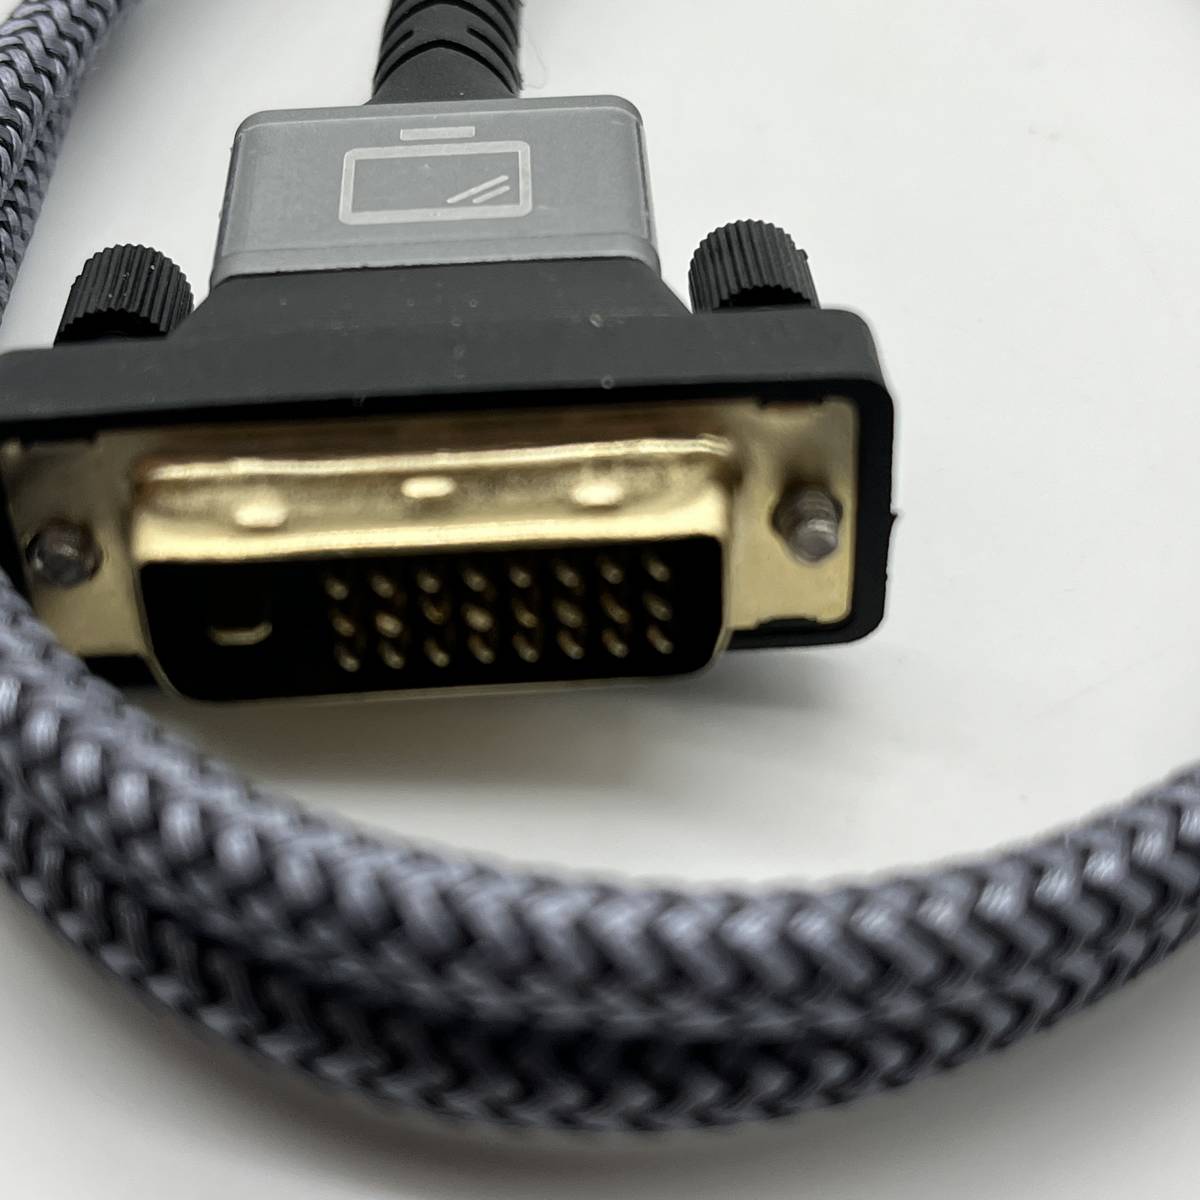 HDMI-DVI 変換ケーブル AKI1911 1M 双方向対応 dvi hdmi 変換 ケーブル 1080P対応 DVI-D オス-HDMI タイプAオス PS4 PS3 TV モニター_画像4